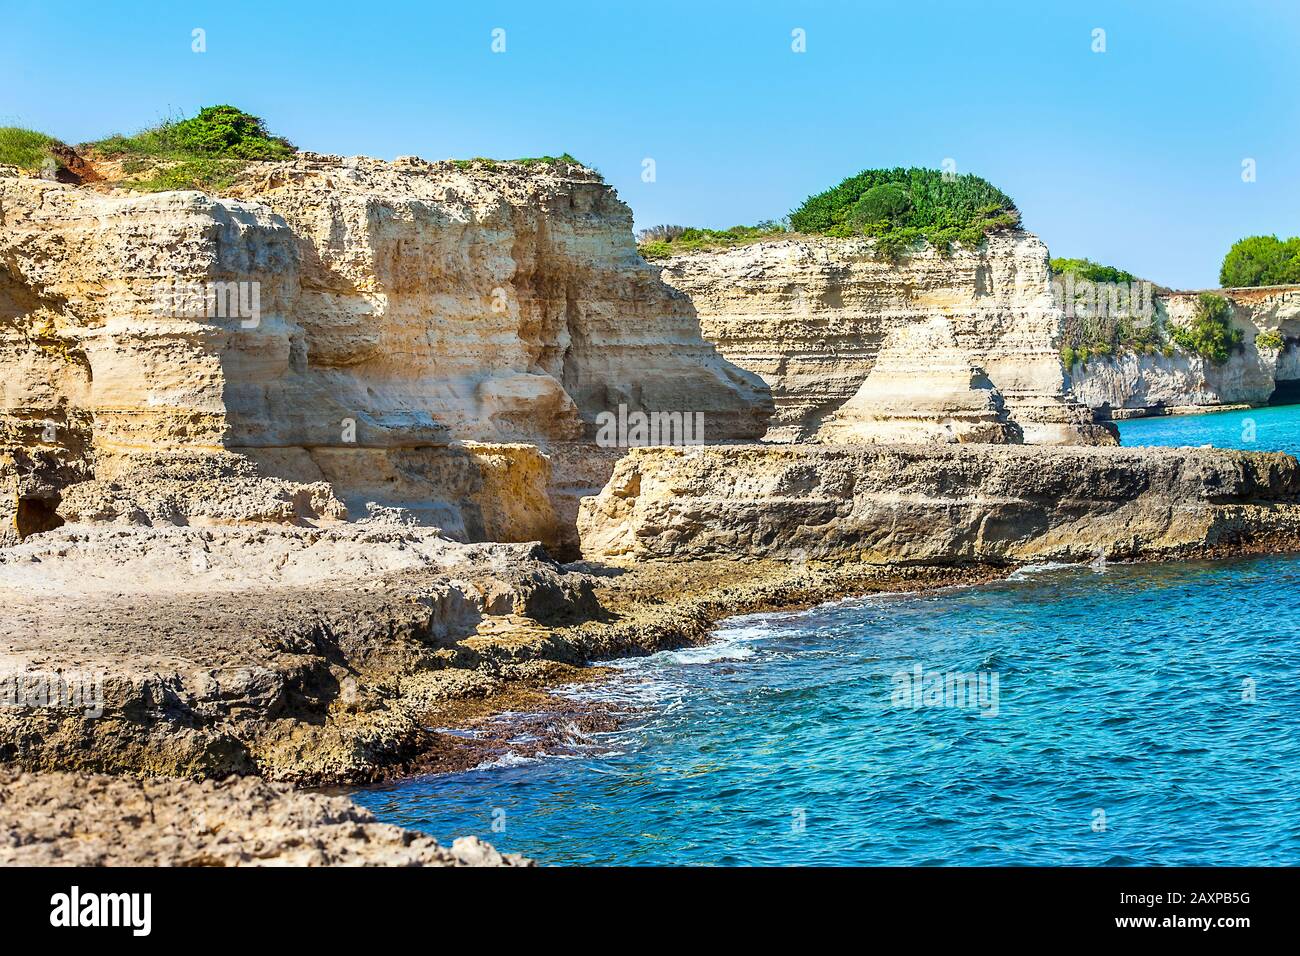 Araglioni en Torre Sant Andrea, Italia. Pintoresco paisaje marino con acantilados y arco rocoso, en Torre Sant Andrea, costa del mar de Salento, Puglia, Italia Foto de stock